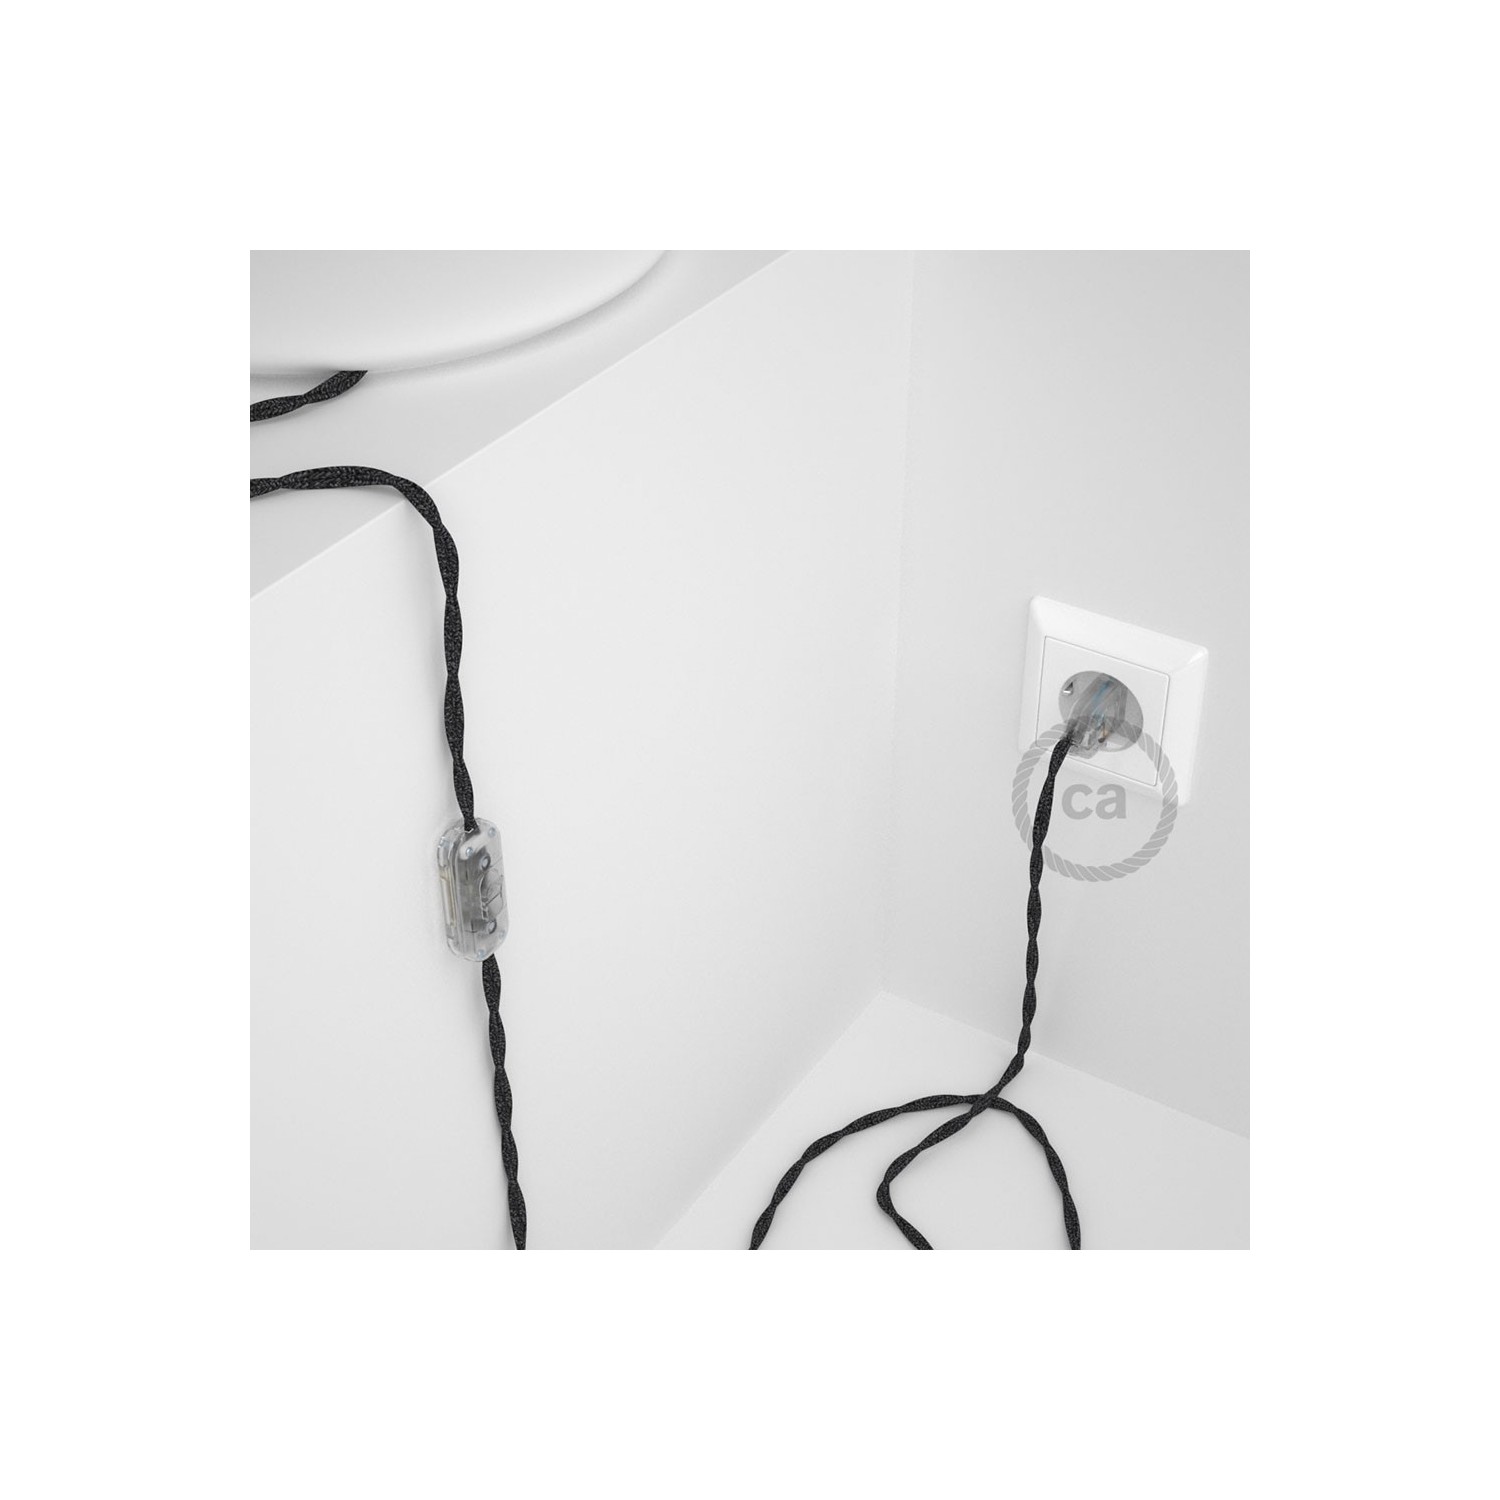 Cordon pour lampe, câble TN03 Lin Naturel Anthracite 1,80 m. Choisissez la couleur de la fiche et de l'interrupteur!